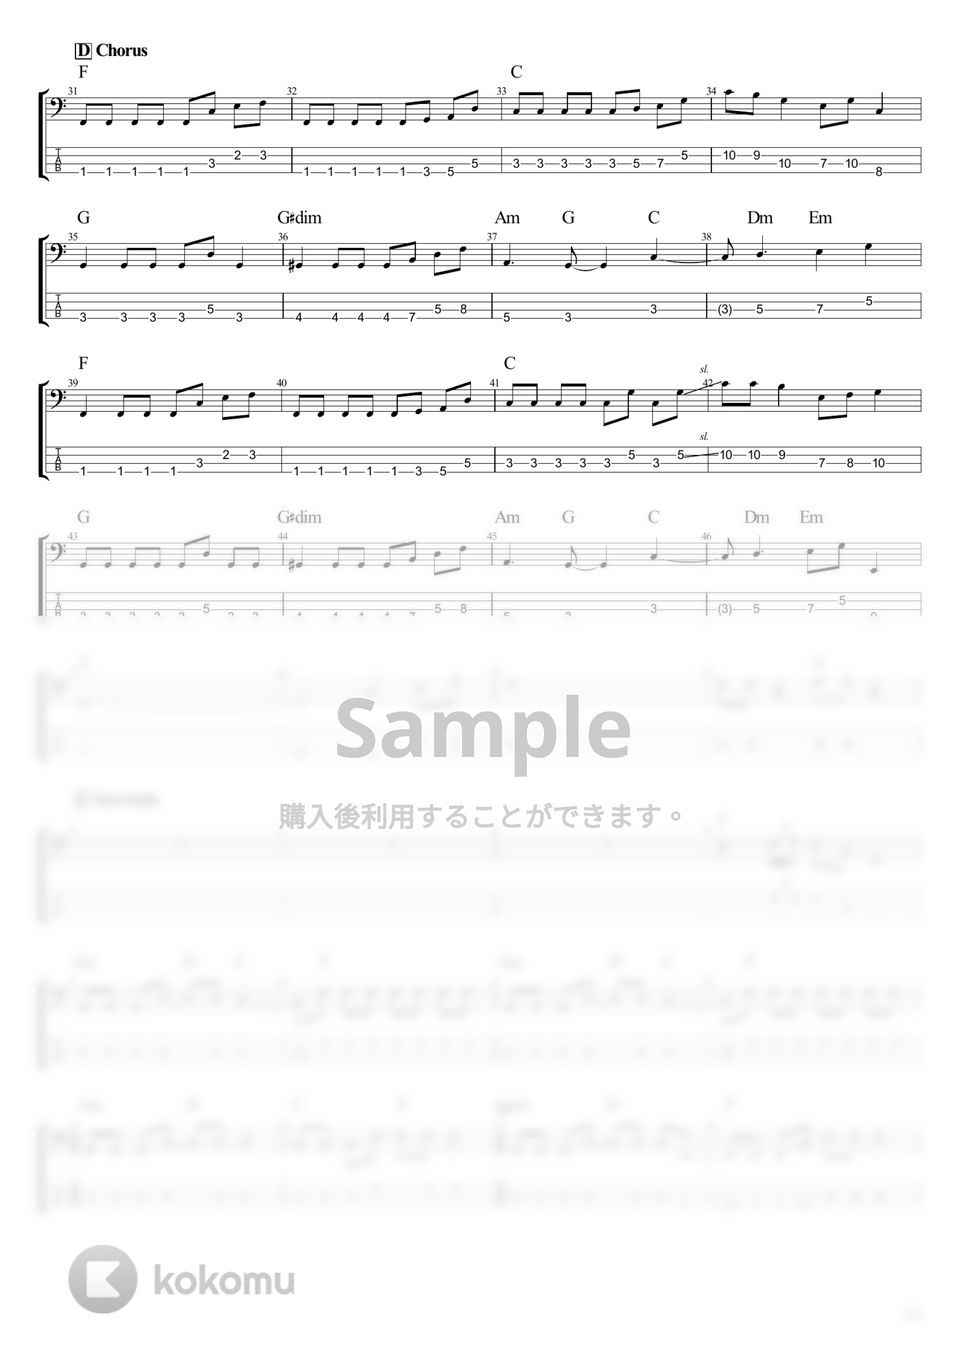 結束バンド - ラブソングが歌えない (ベース Tab譜 4弦) by T's bass score